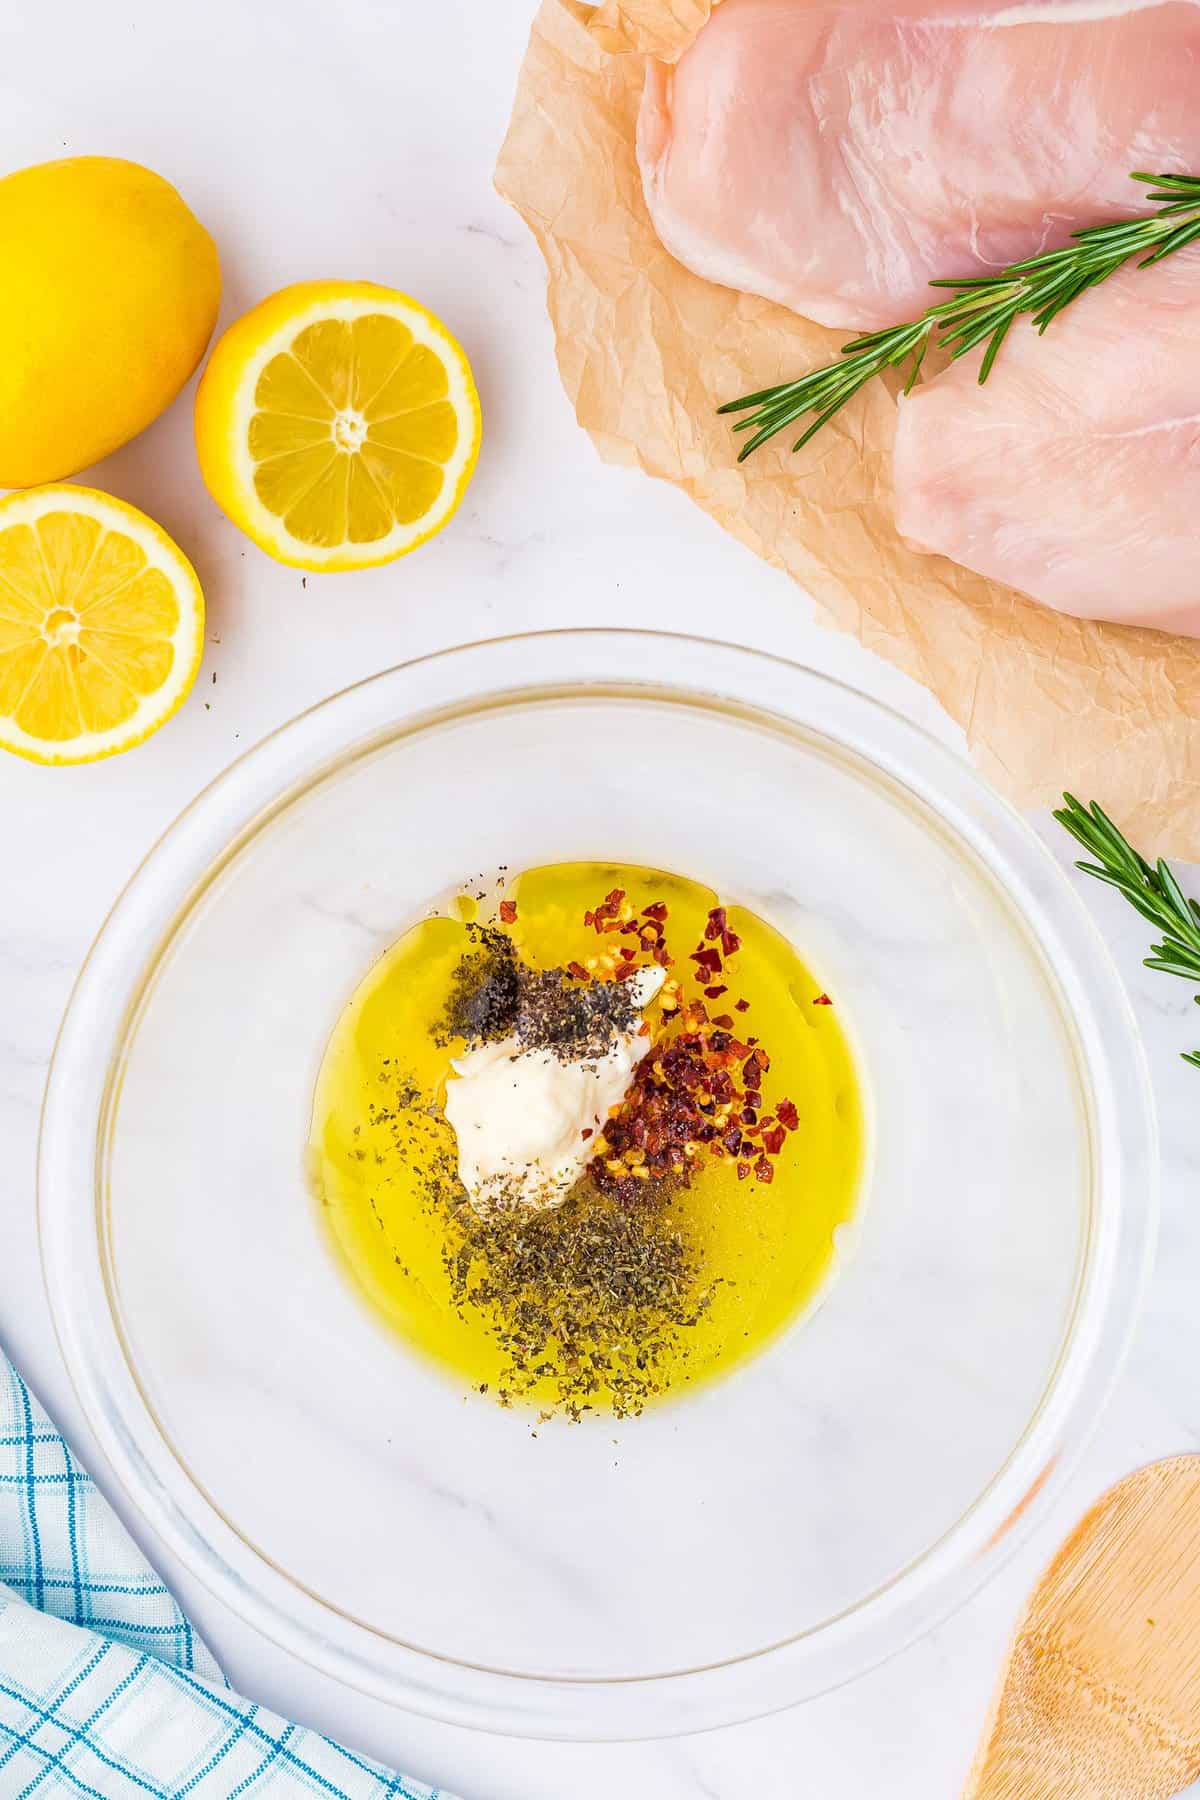 Lemon marinade ingredients in bowl